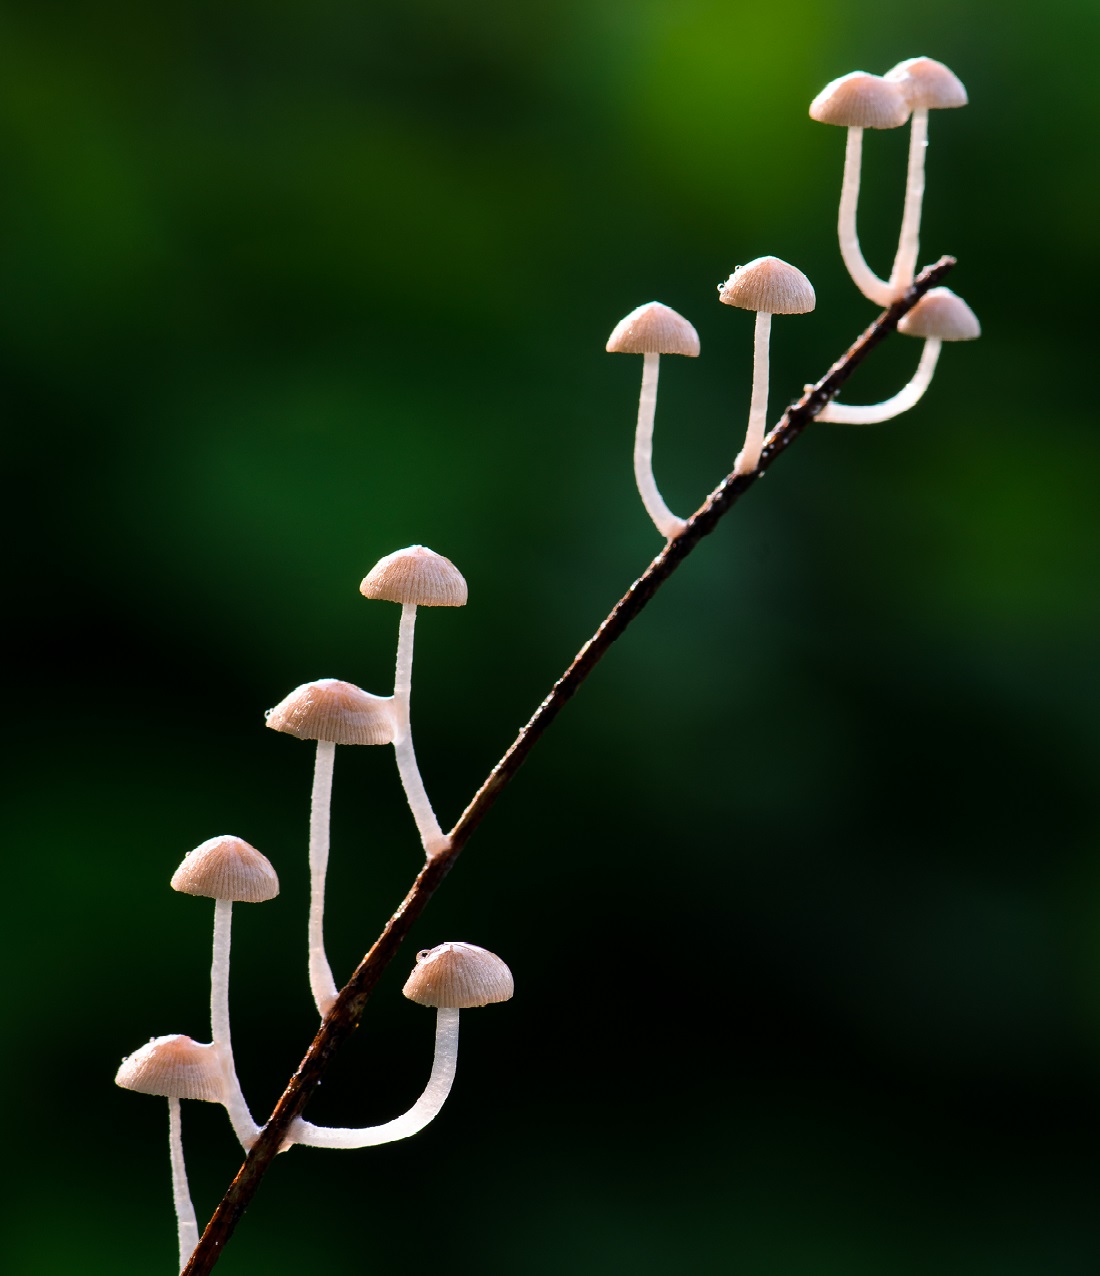 Mycena mushroom on a plant